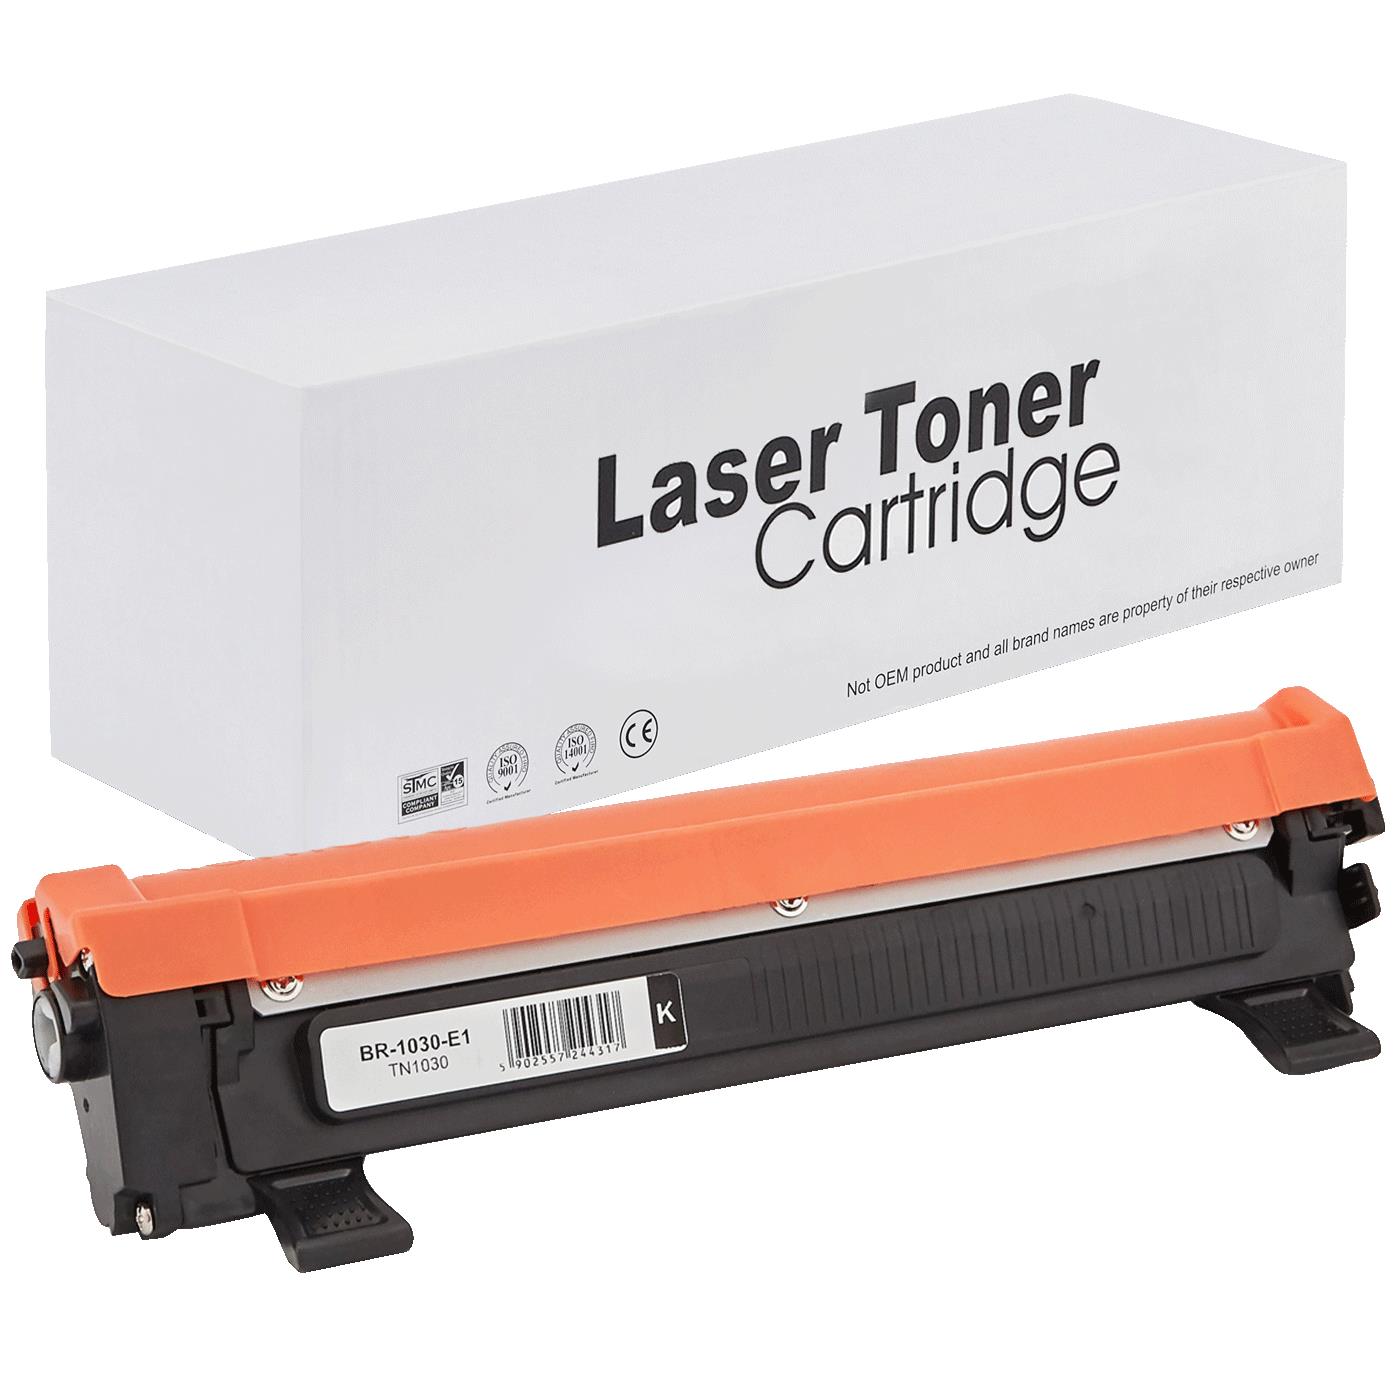 съвместима тонер касета за принтери и печатащи устройства на Brother 1112E Toner BR-1030 | TN1030 / TN1050 / TN-1030. Ниски цени, прецизно изпълнение, високо качество.